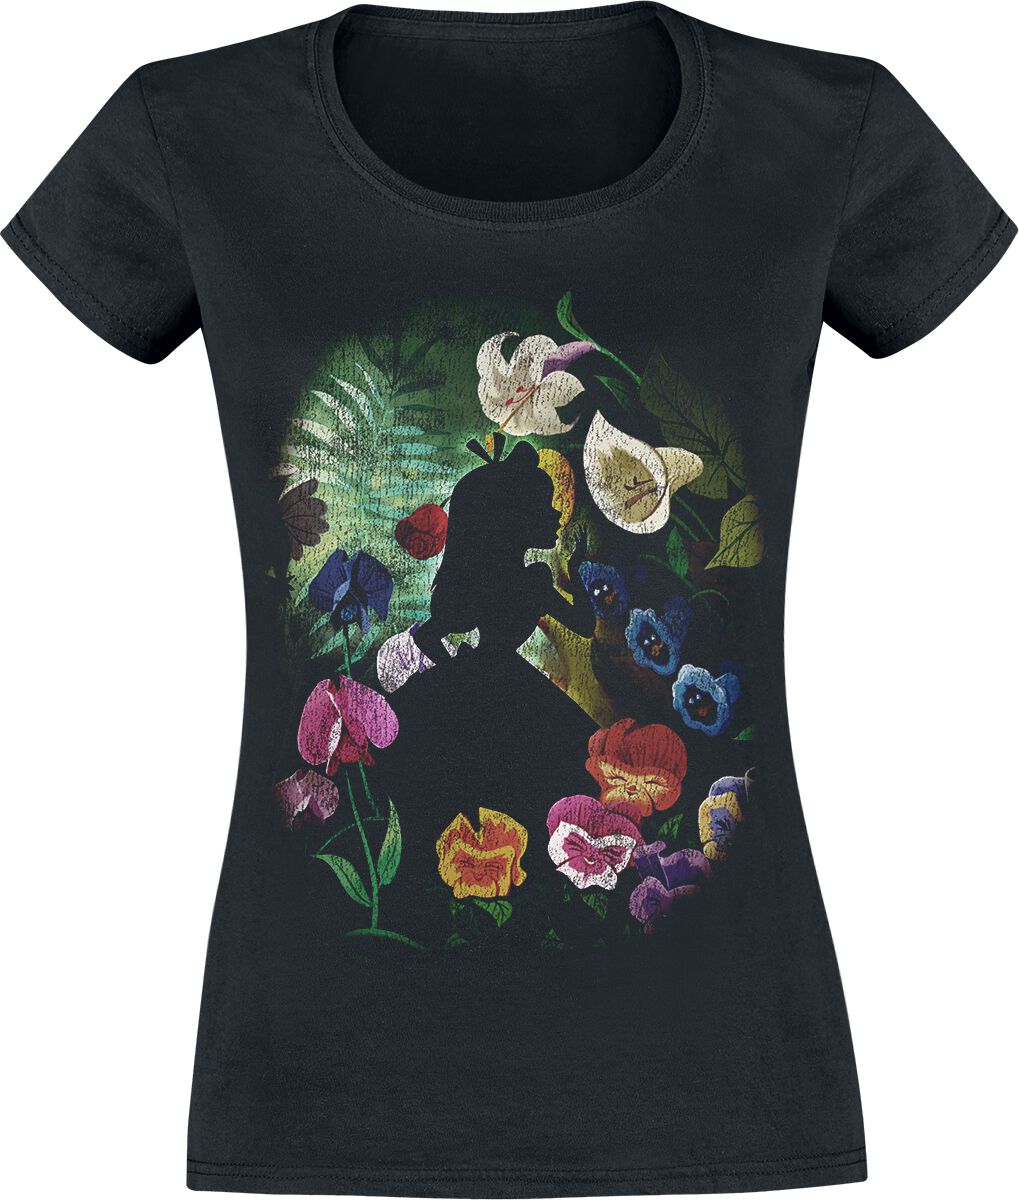 Alice im Wunderland - Disney T-Shirt - Black Flower - XS bis XXL - für Damen - Größe XXL - schwarz  - Lizenzierter Fanartikel